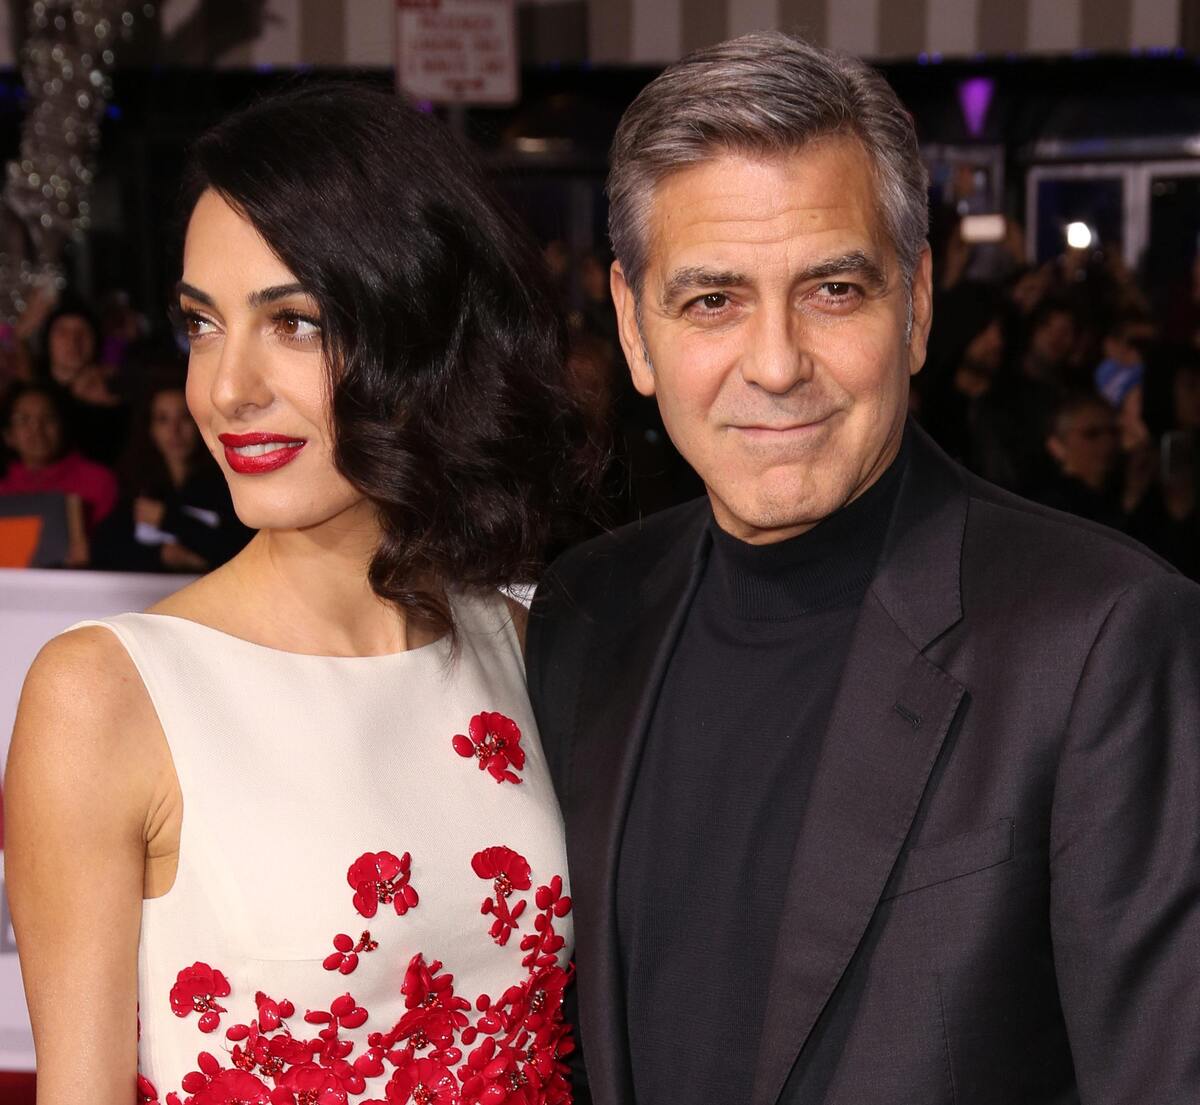 Джордж Клуни рассказал, как делал предложение своей жене